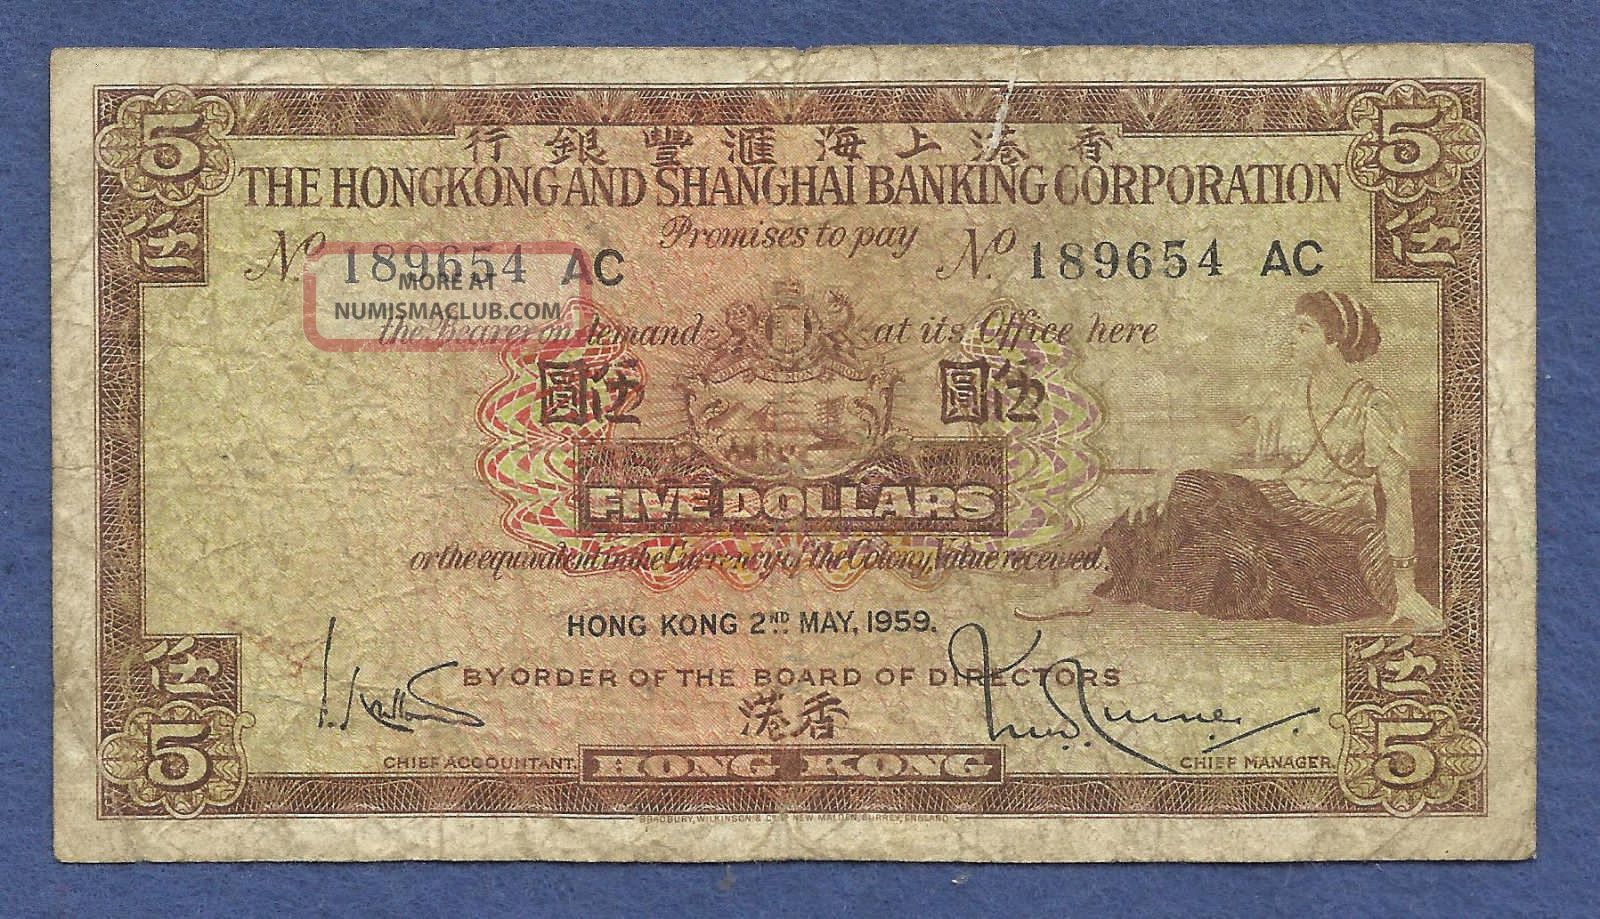 Hong Kong Chartered Bank 5 Dollars 1959 Note 189654 Ac Hong Kong & Shanghai Bank Asia photo